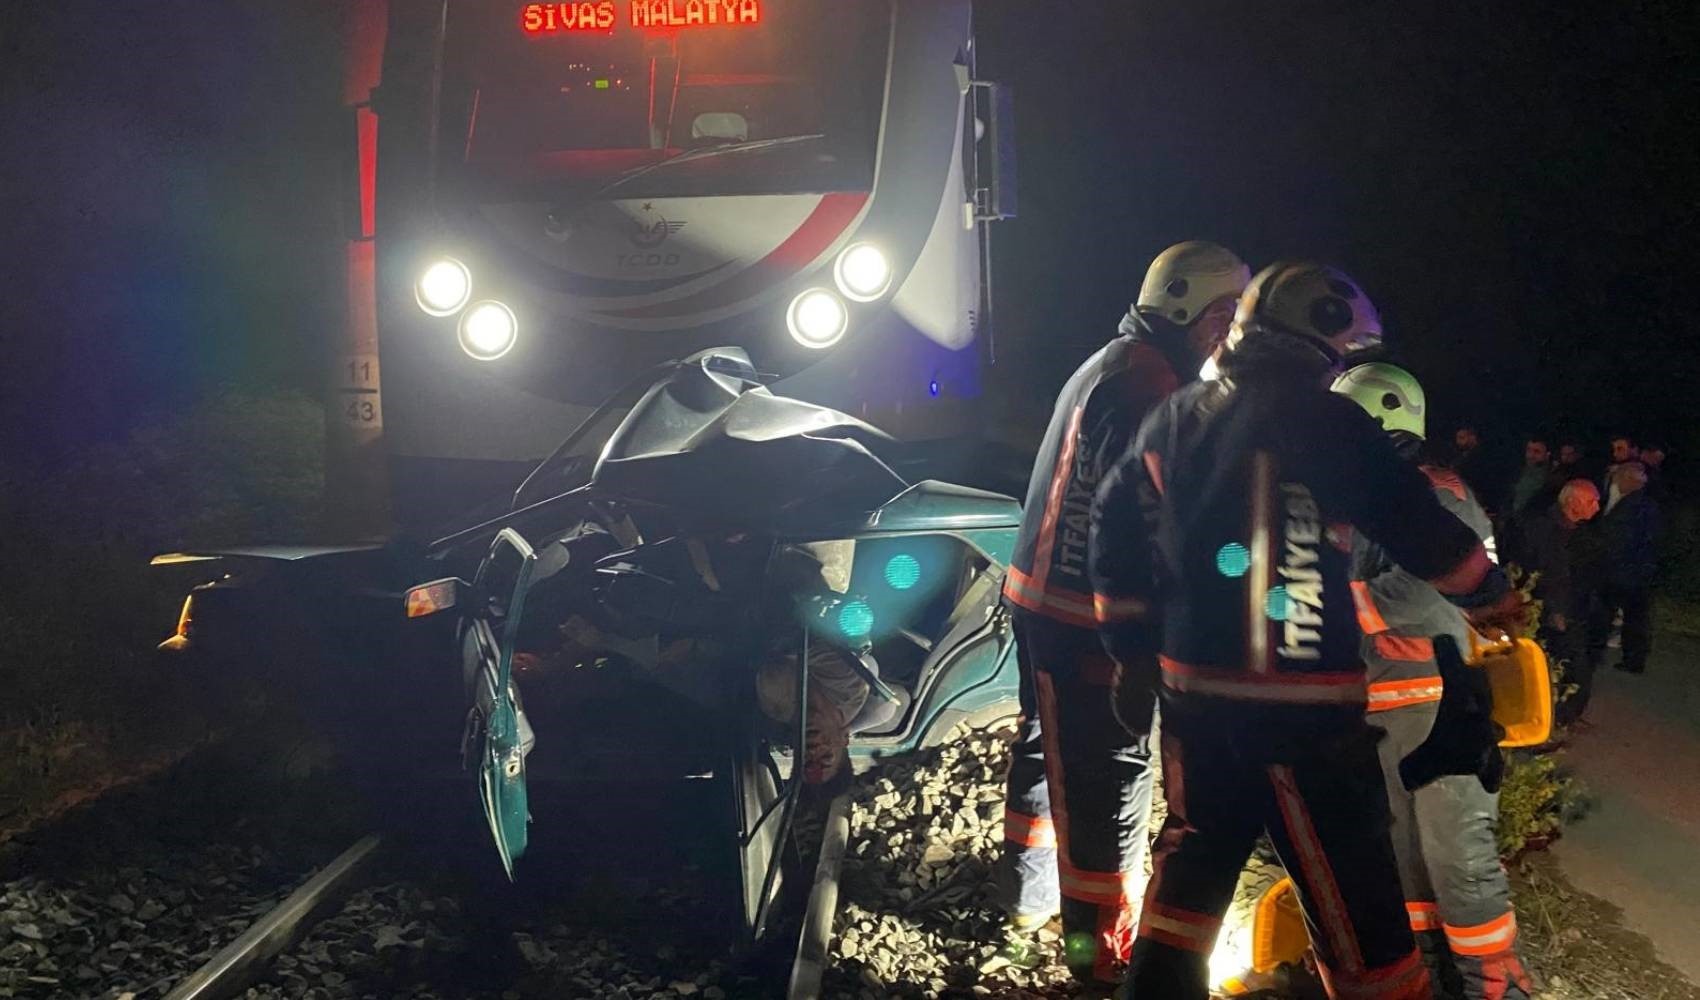 Malatya’da feci kaza: Tren altında 200 metre sürüklendi